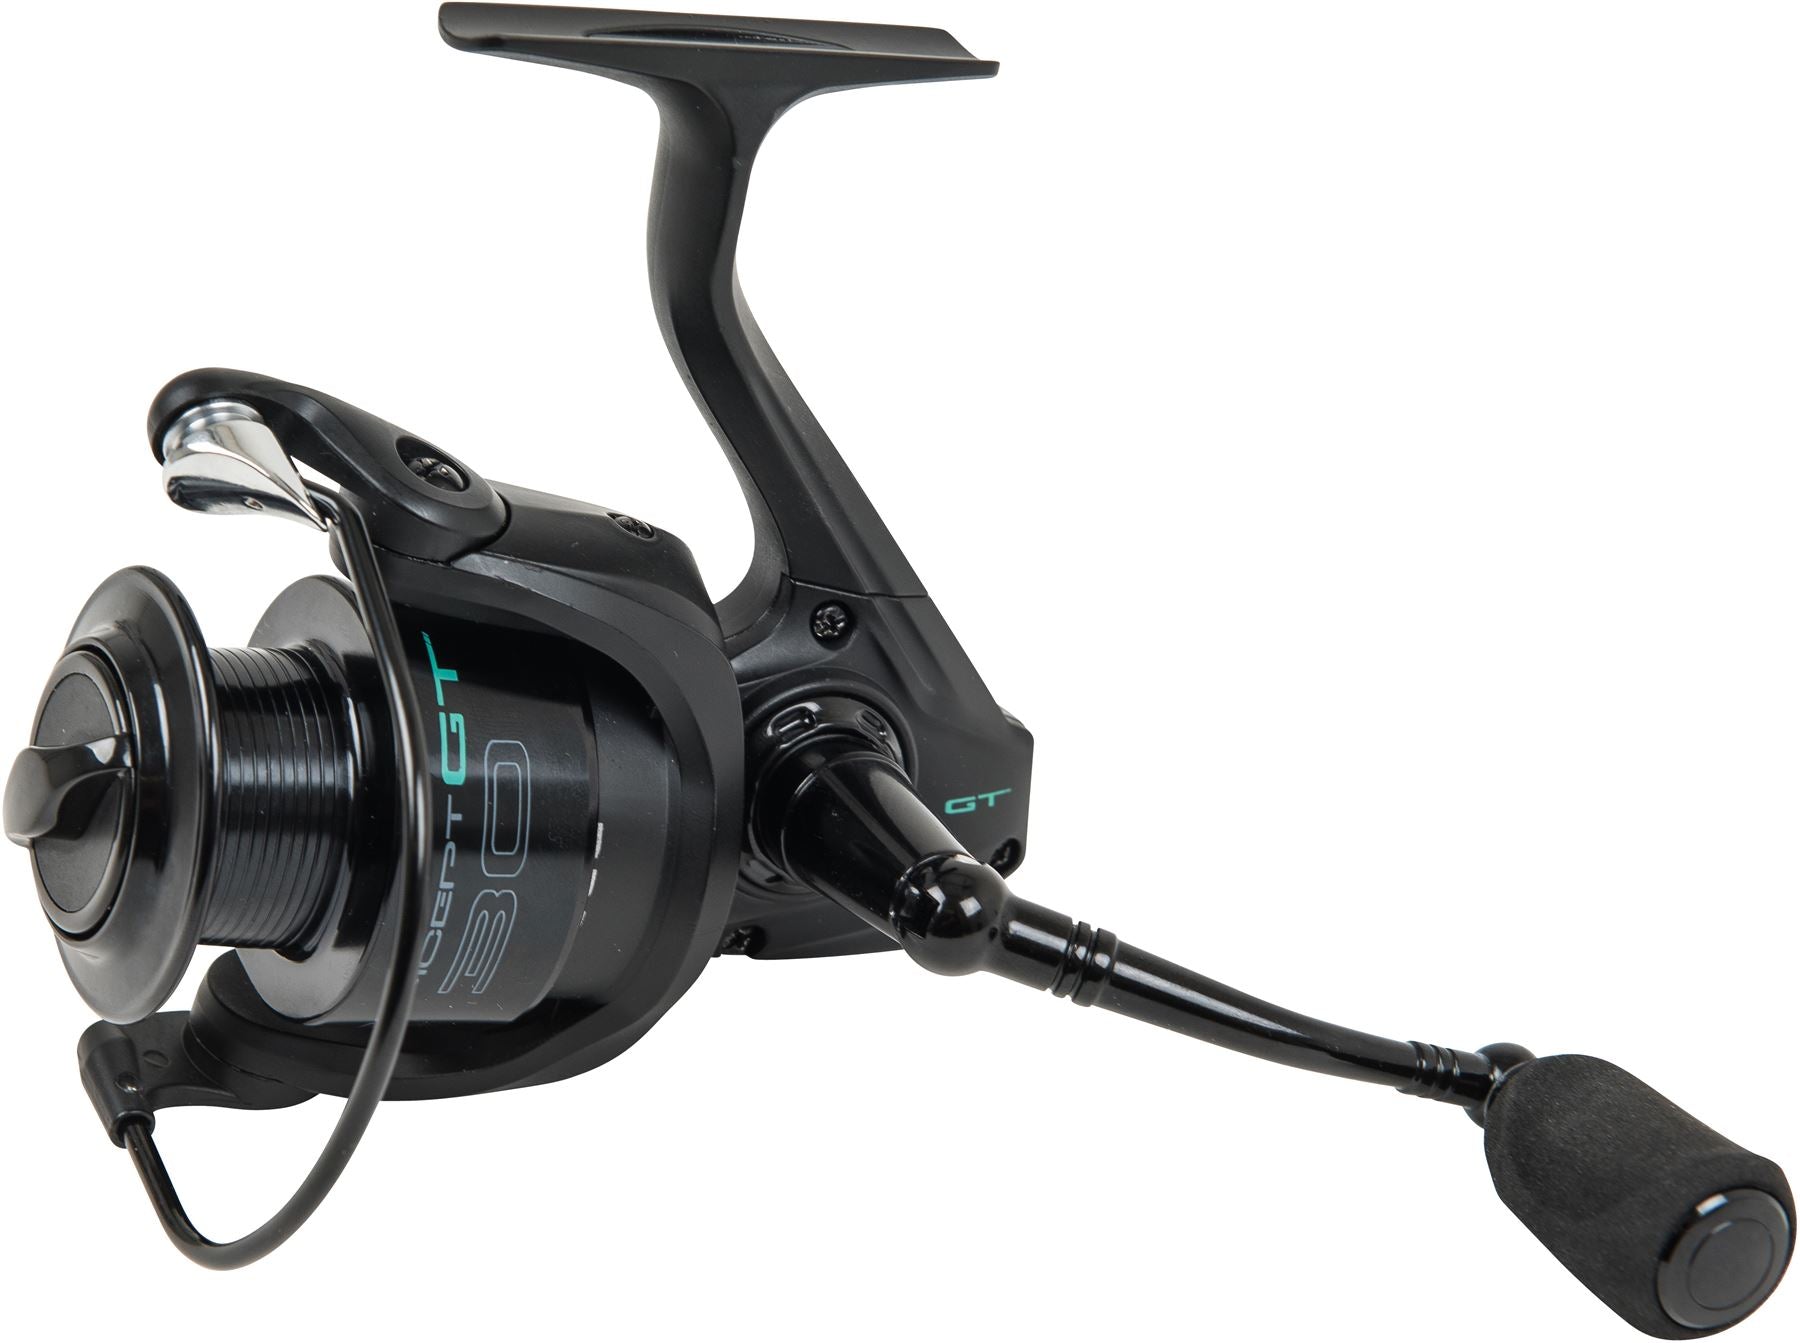 Leeda Concept GT 30FD – Great Fishing Tackle